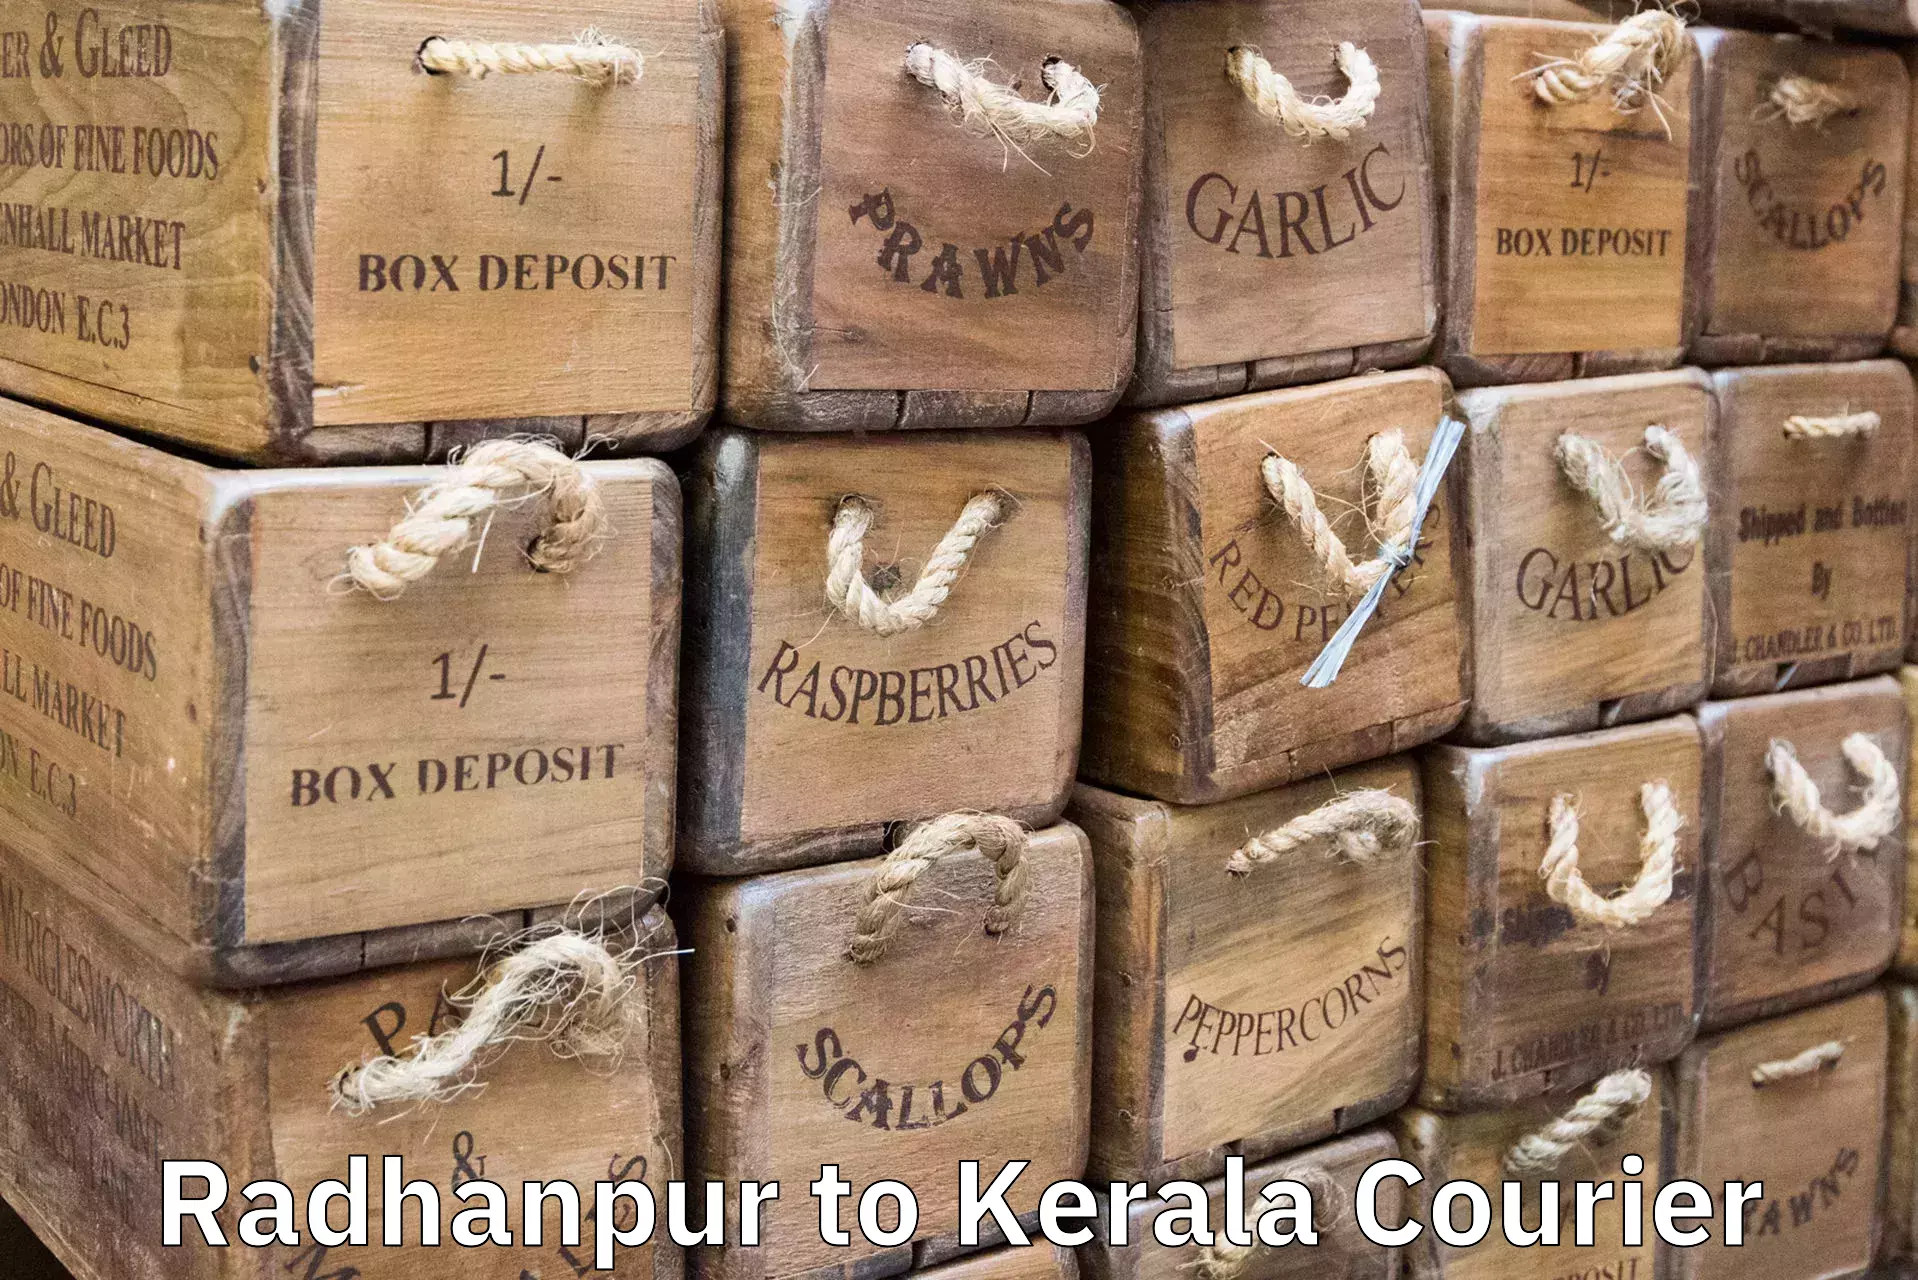 Baggage shipping experts Radhanpur to Kakkur